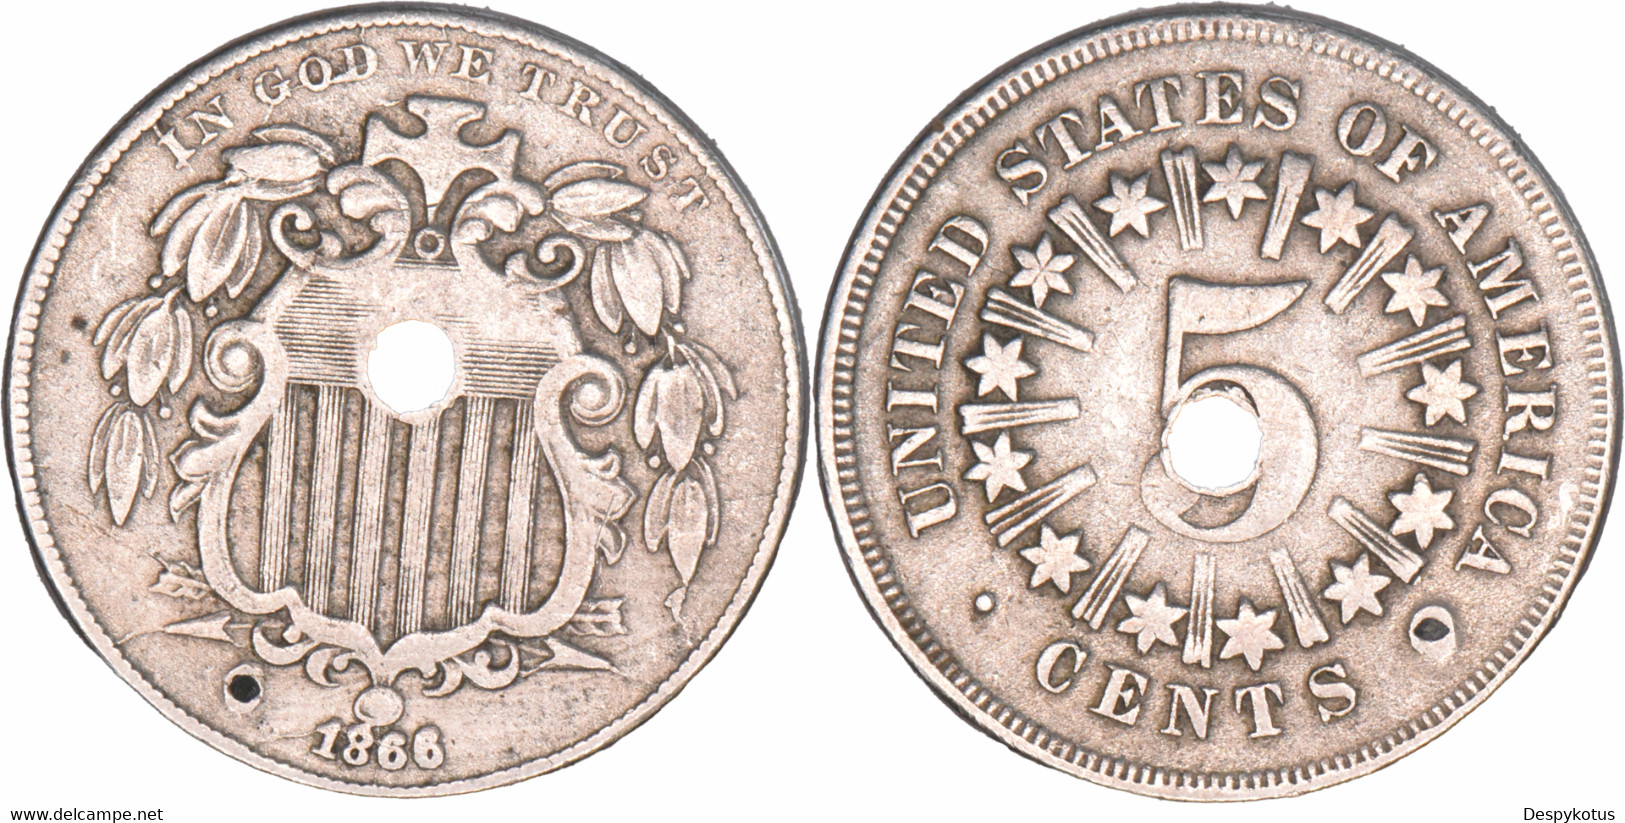 Etats-Unis - 1866 - 5 Cents Shield With Ray - Monnaie Percée - QUALITE - RARE - 07-163 - 1866-83: Escudo